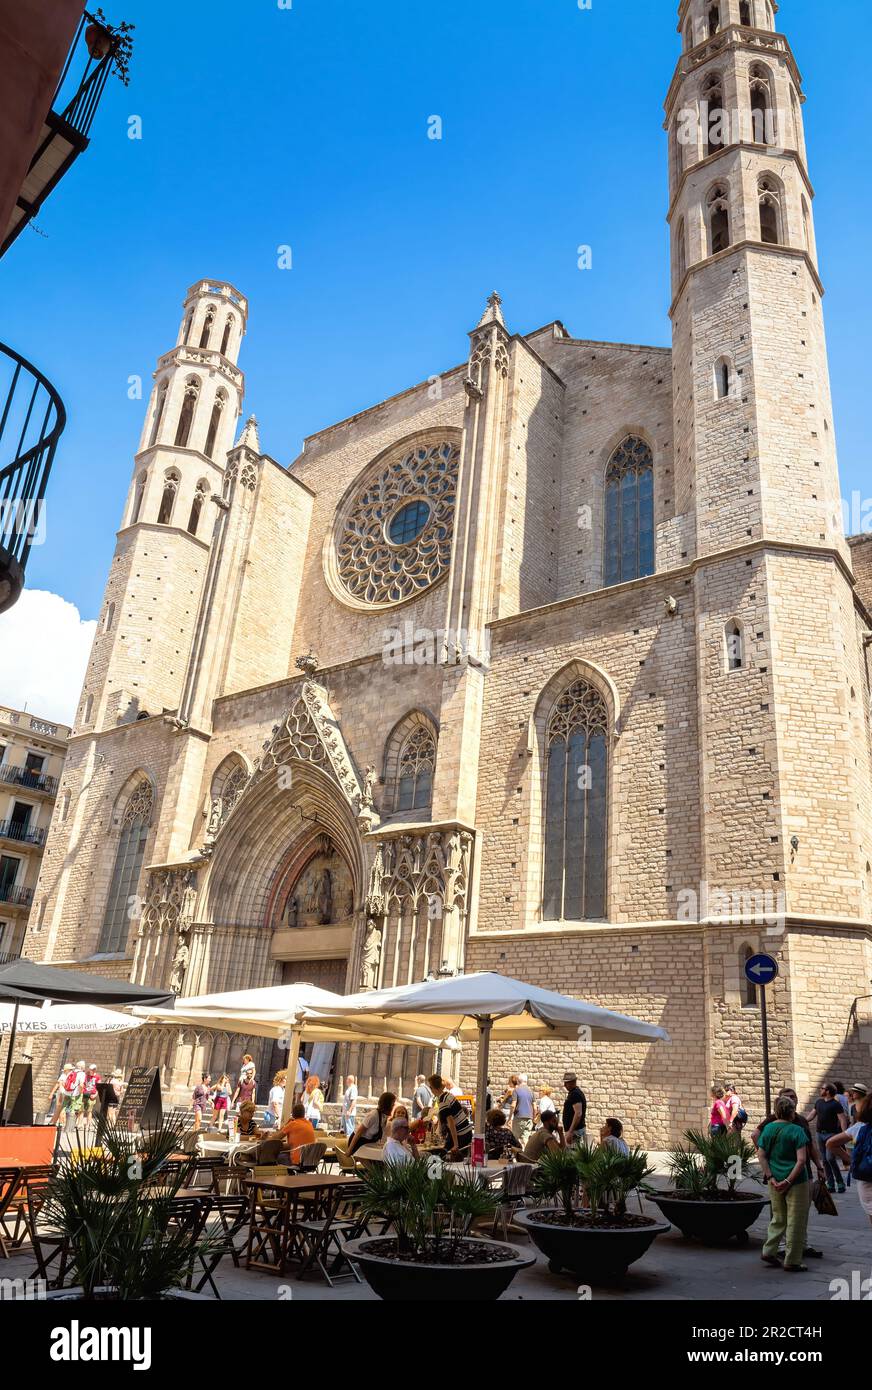 Barcelone, Espagne - 6 juillet 2017: Vue de jour de l'église Santa Maria del Mar dans la région d'El Born, à Barcelone, Espagne. Banque D'Images